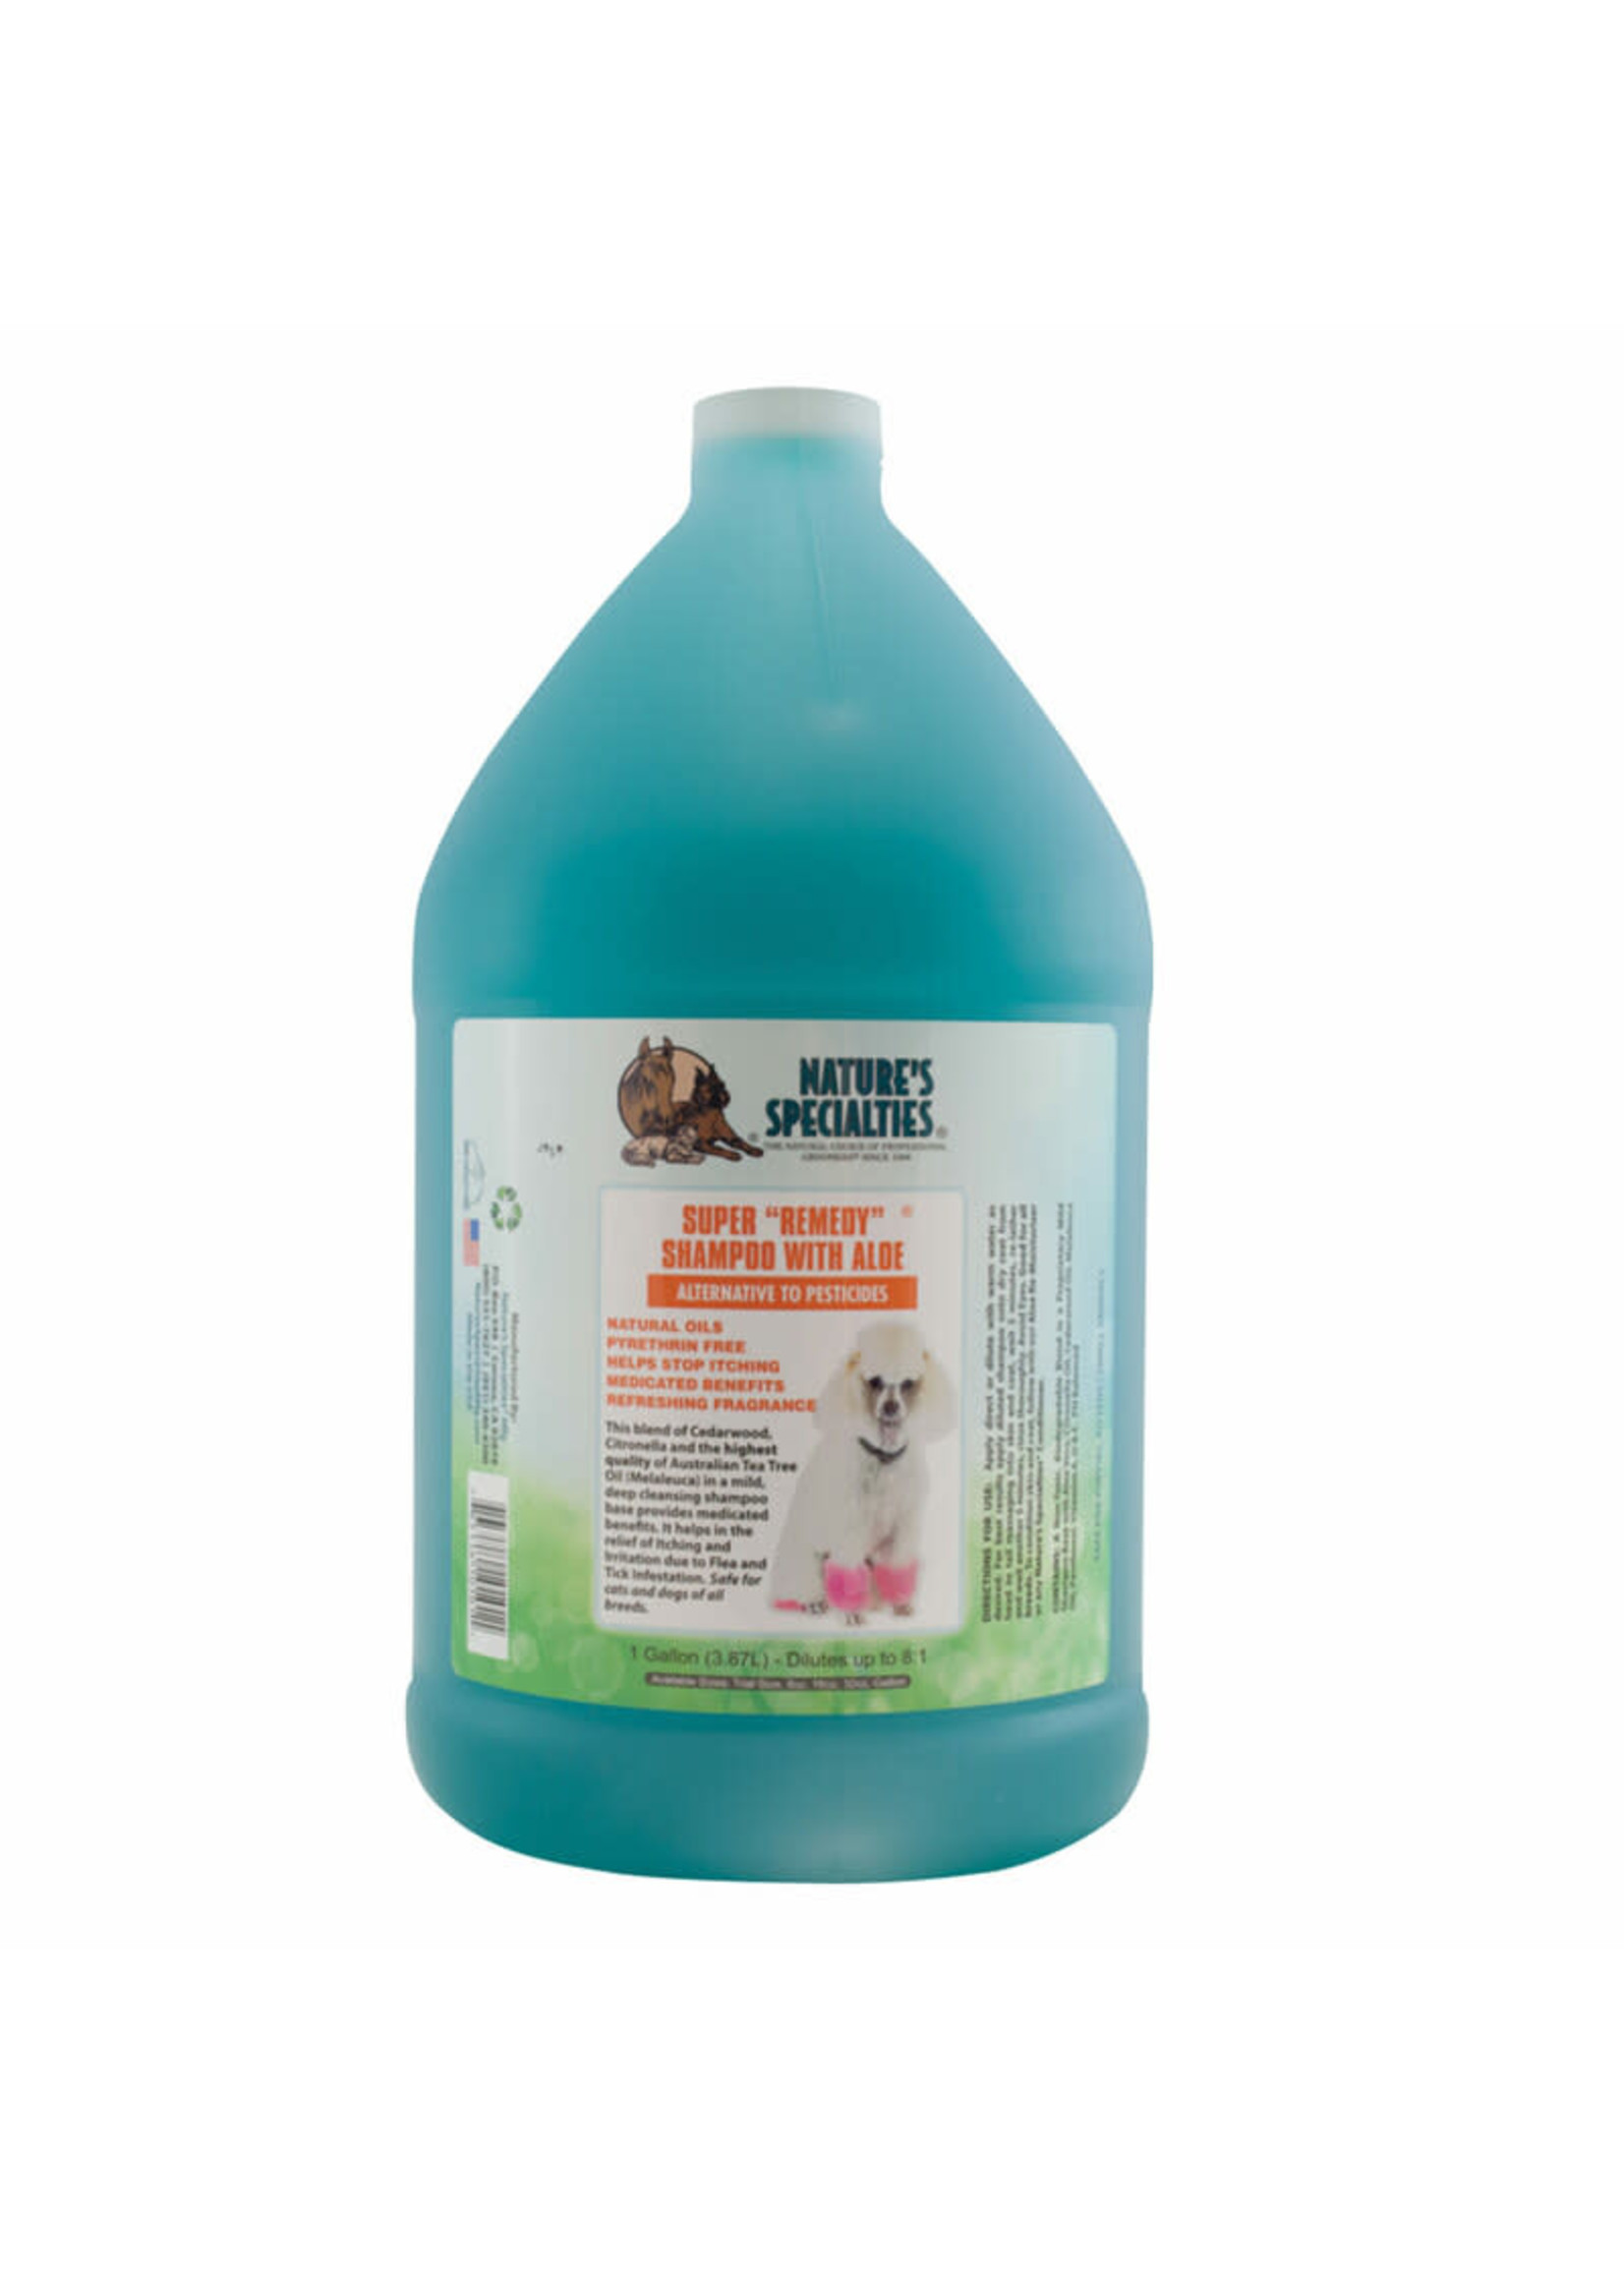 Nature's Specialties Nature's Specialties Super Remedy Shampoo with Aloe  Gallon